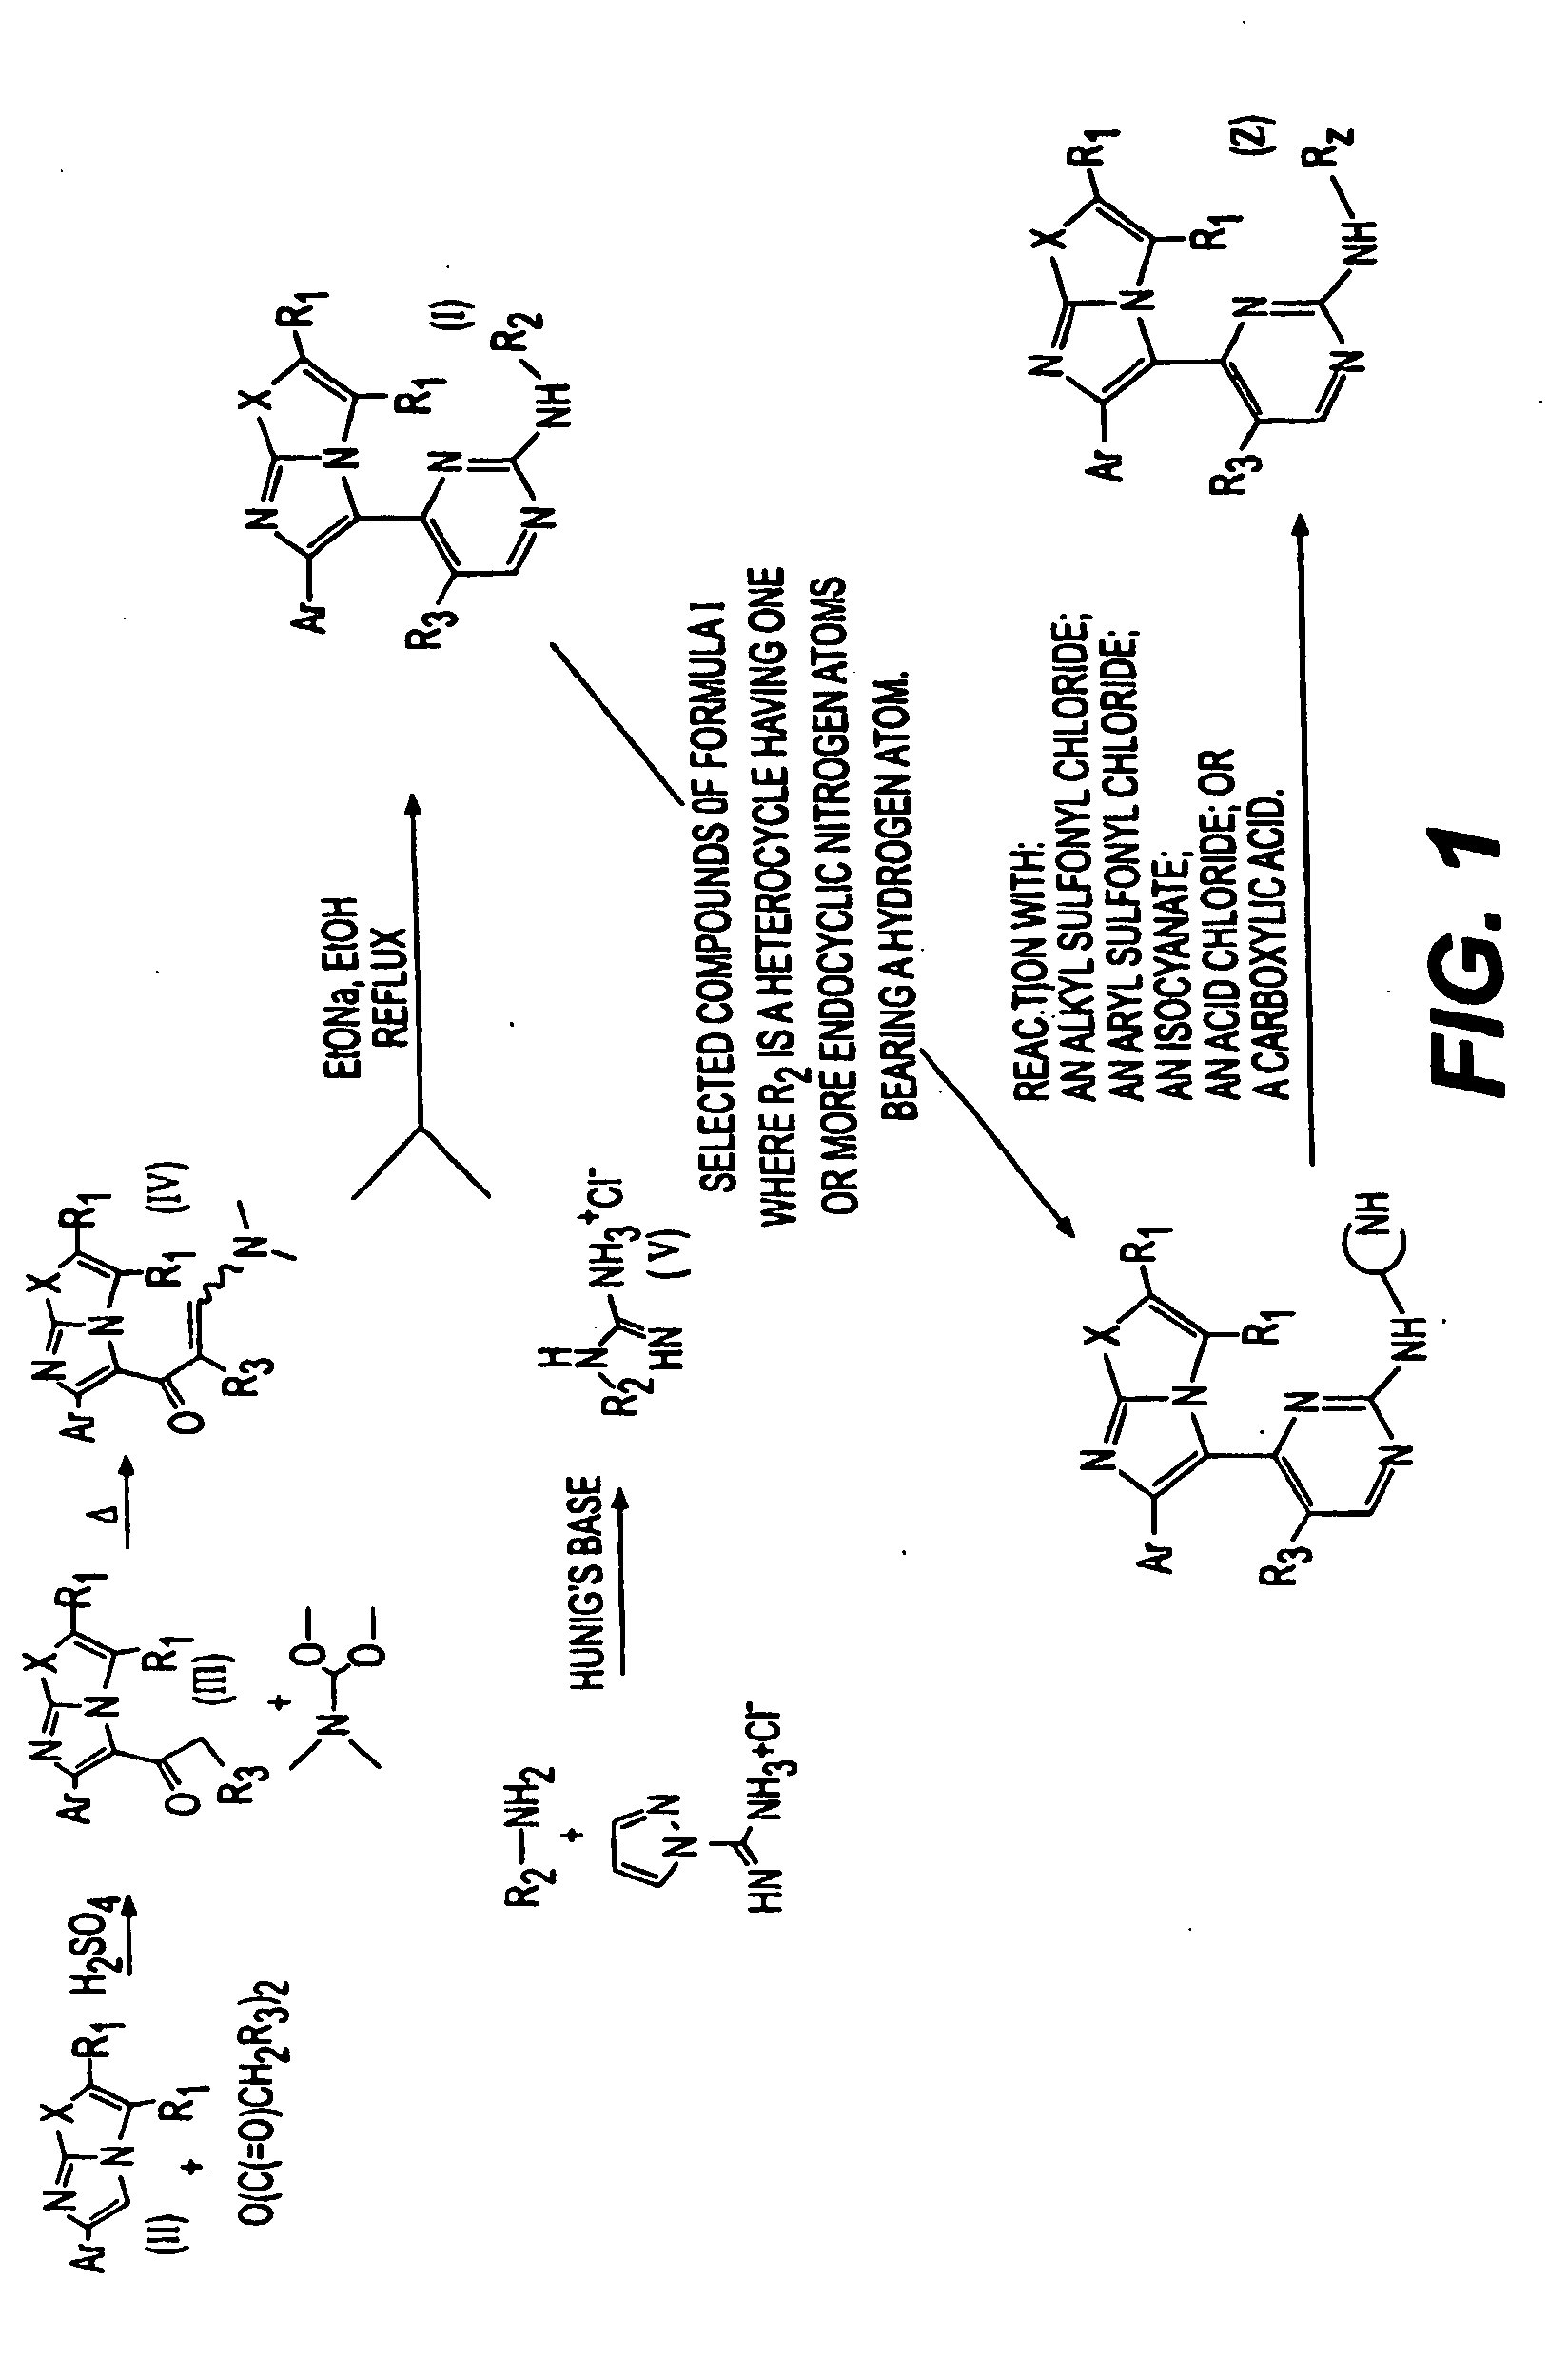 Synthesis of imidazooxazole and imidazothiazole inhibitors of p38 map kinase